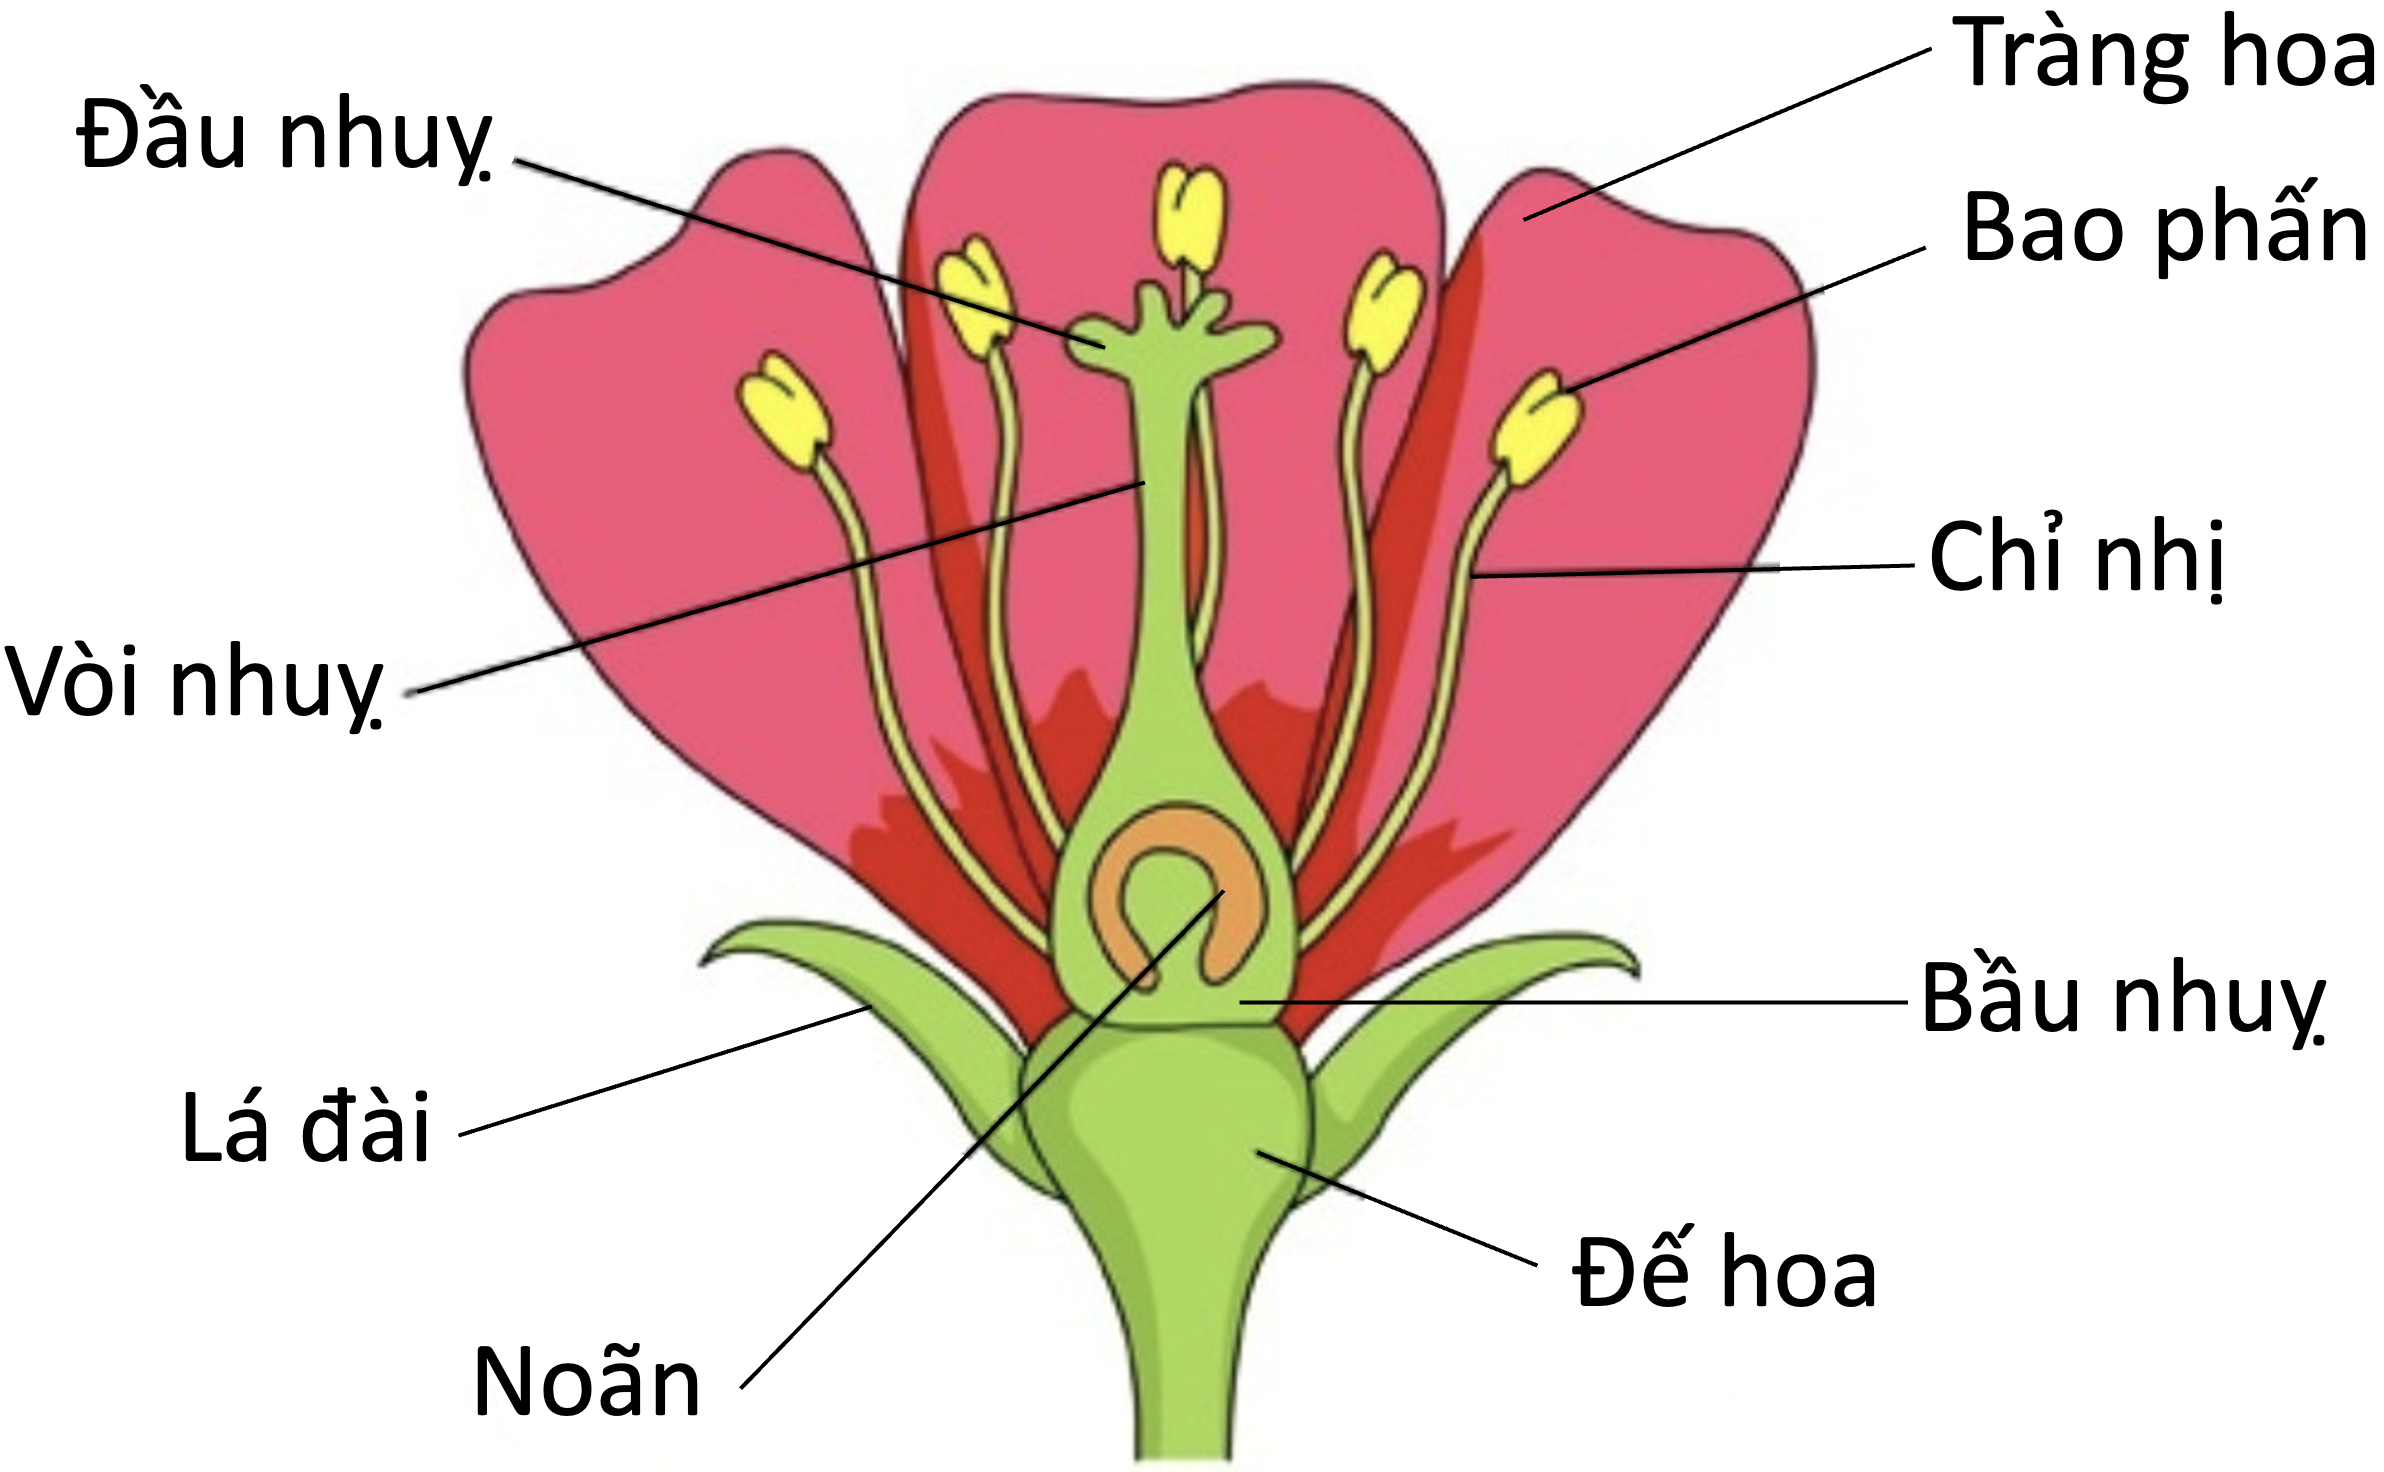 Строение цветка чашелистик пыльник завязь. Строение цветов. Структура цветка. Анатомия цветка.